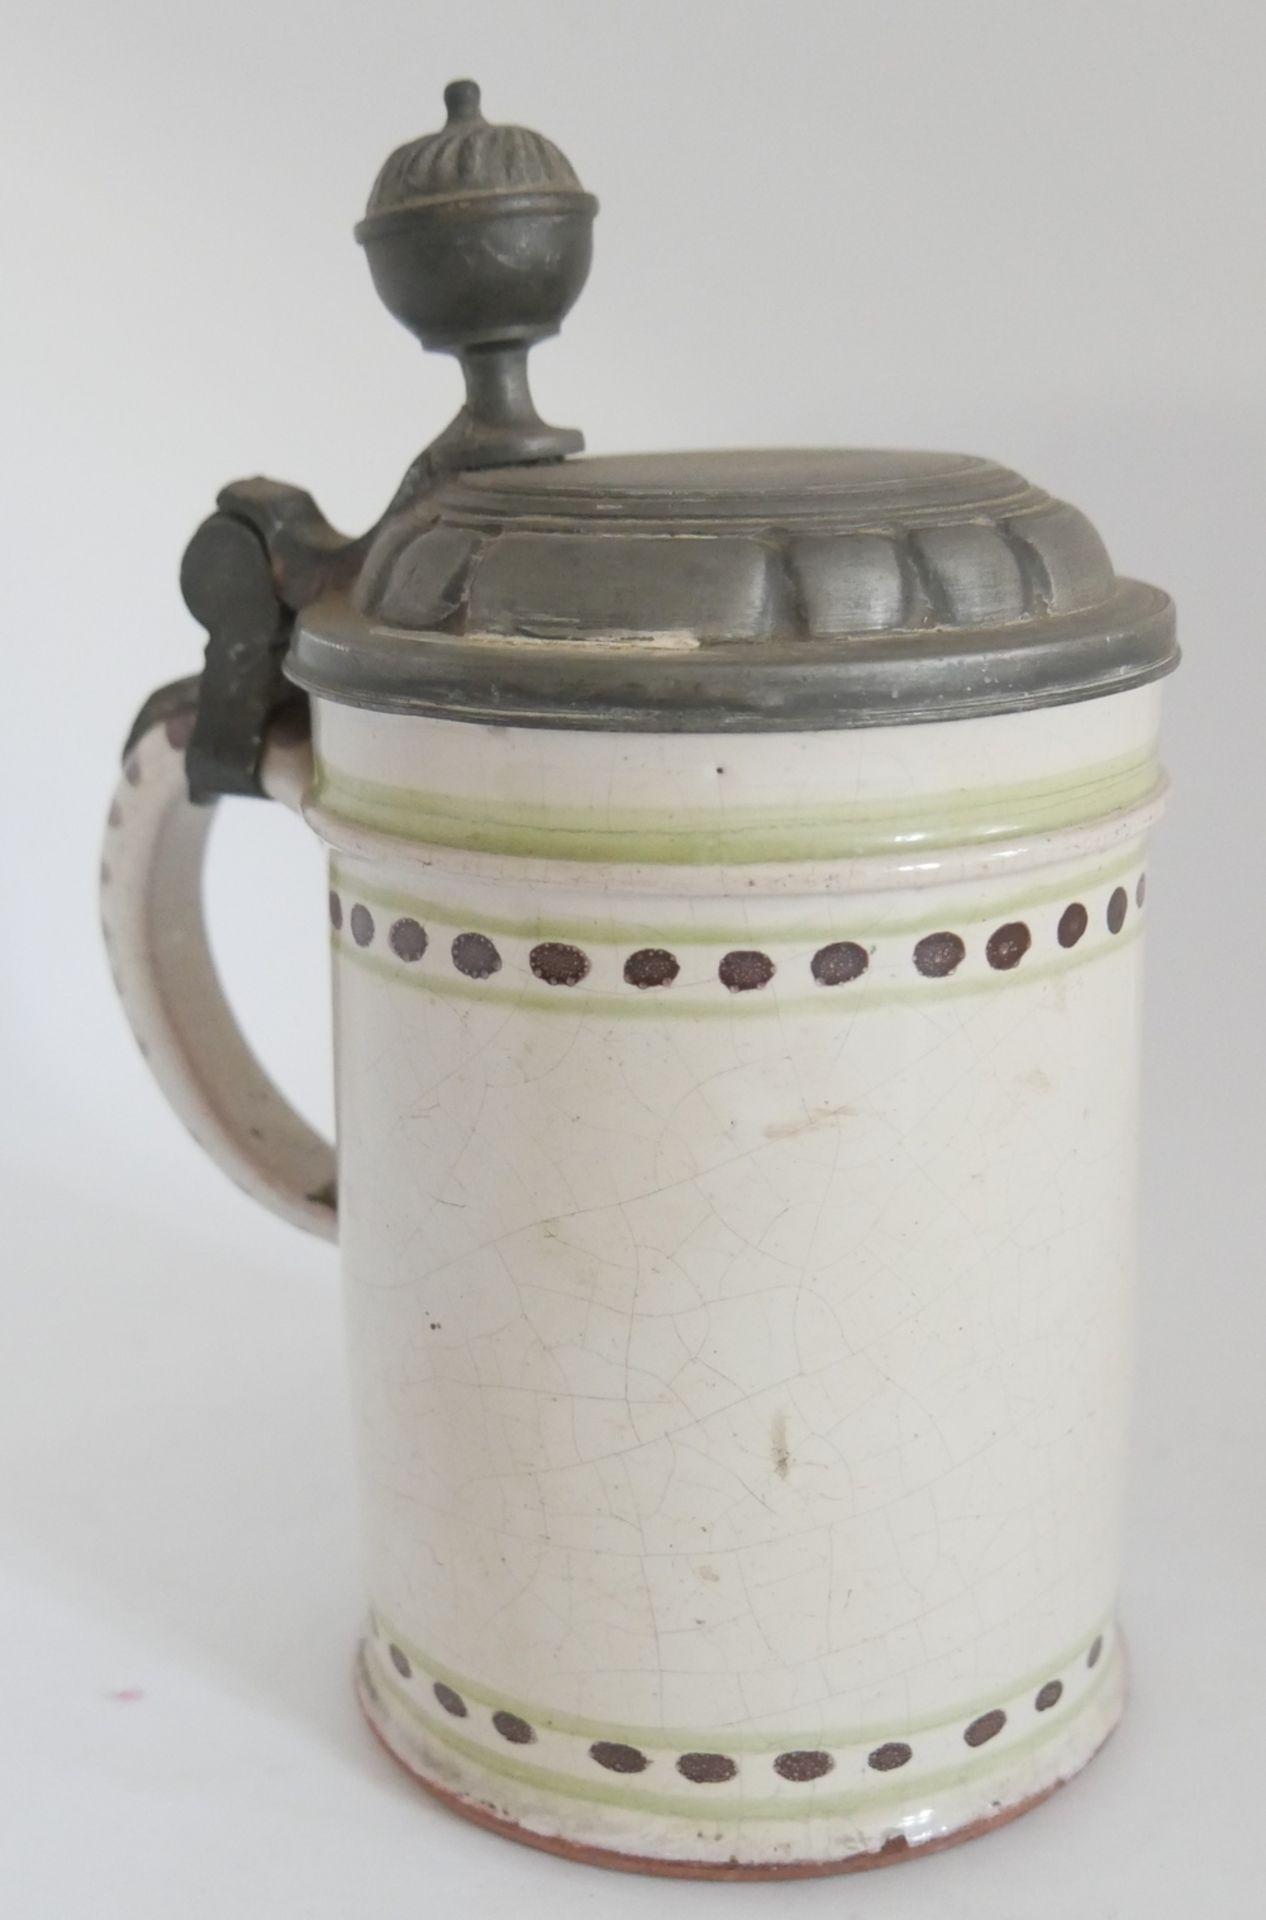 1 alter Keramik Bierkrug um 1820, mit Zinndaumendrücker. Höhe ca. 18 cm. Original aus der Zeit